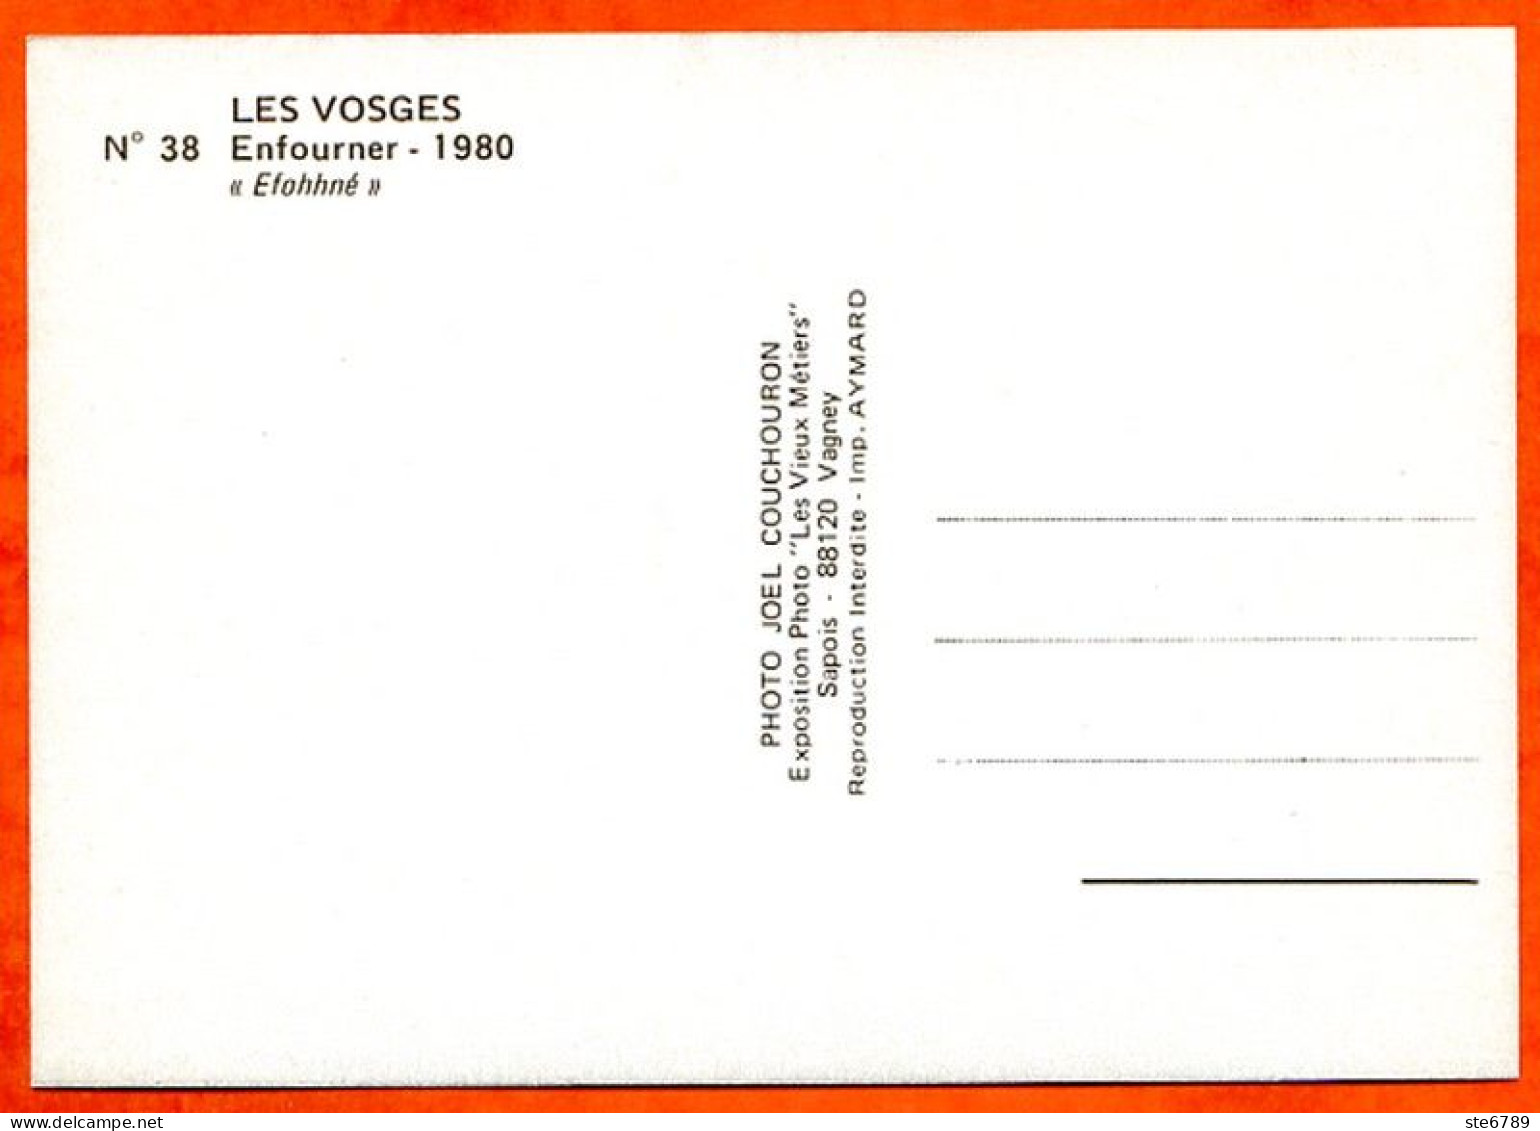 48 cartes vieux métiers Série complete Expostion Photo 88 Vosges Artisanat Paysans Bois Fenaison Chevaux Aymard ste6789